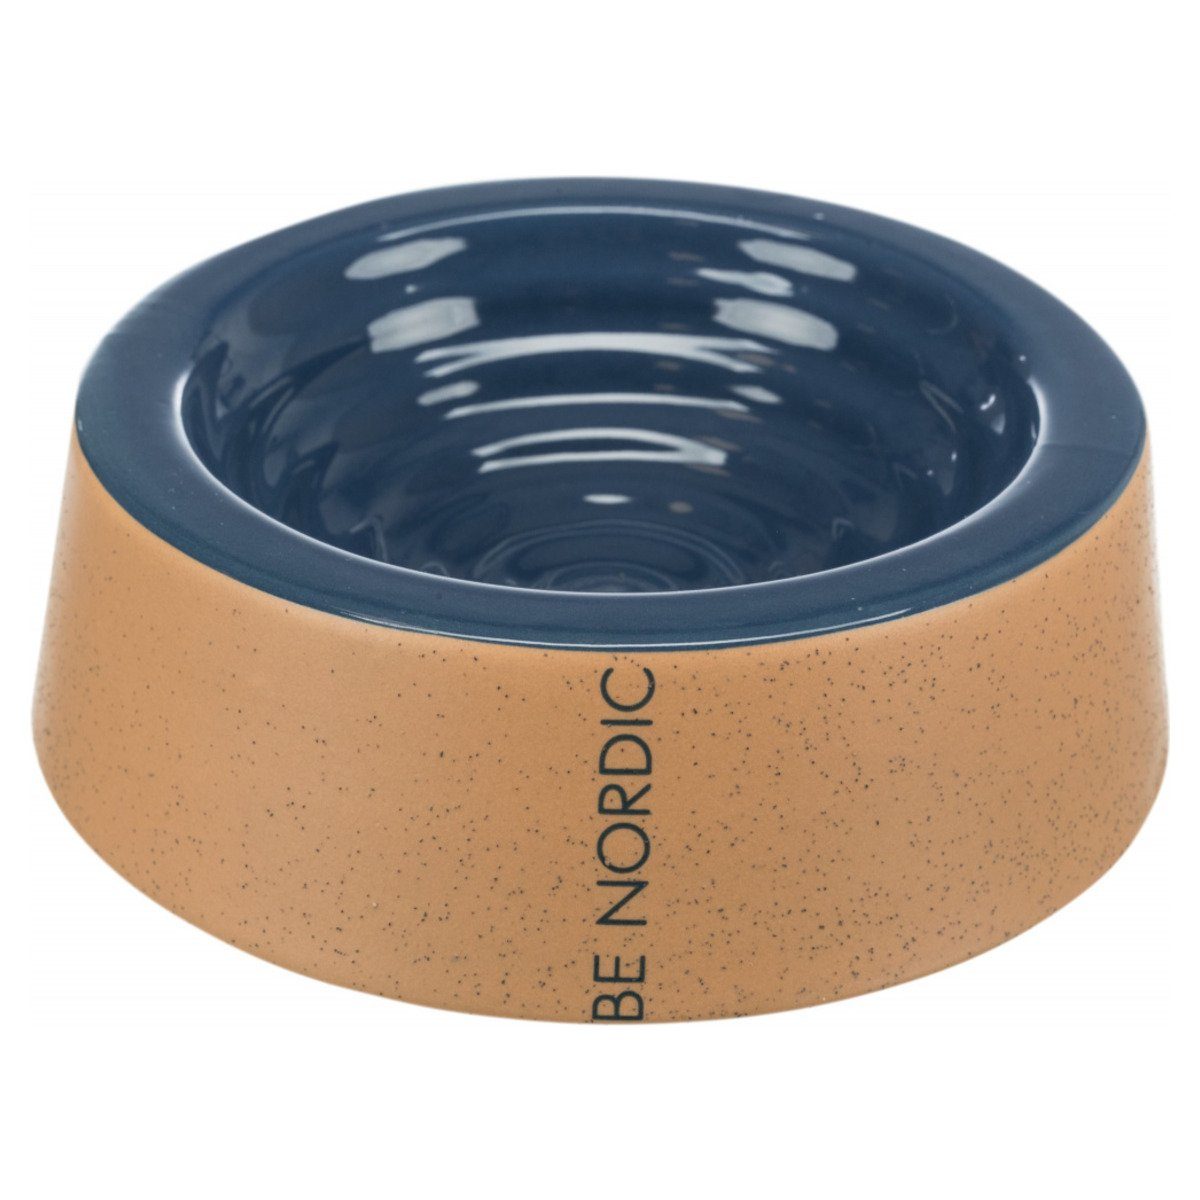 TRIXIE Futterbehälter BE NORDIC Keramiknapf dunkelblau/beige, Durchmesser: 16 cm / Fassungsvermögen: 200 ml